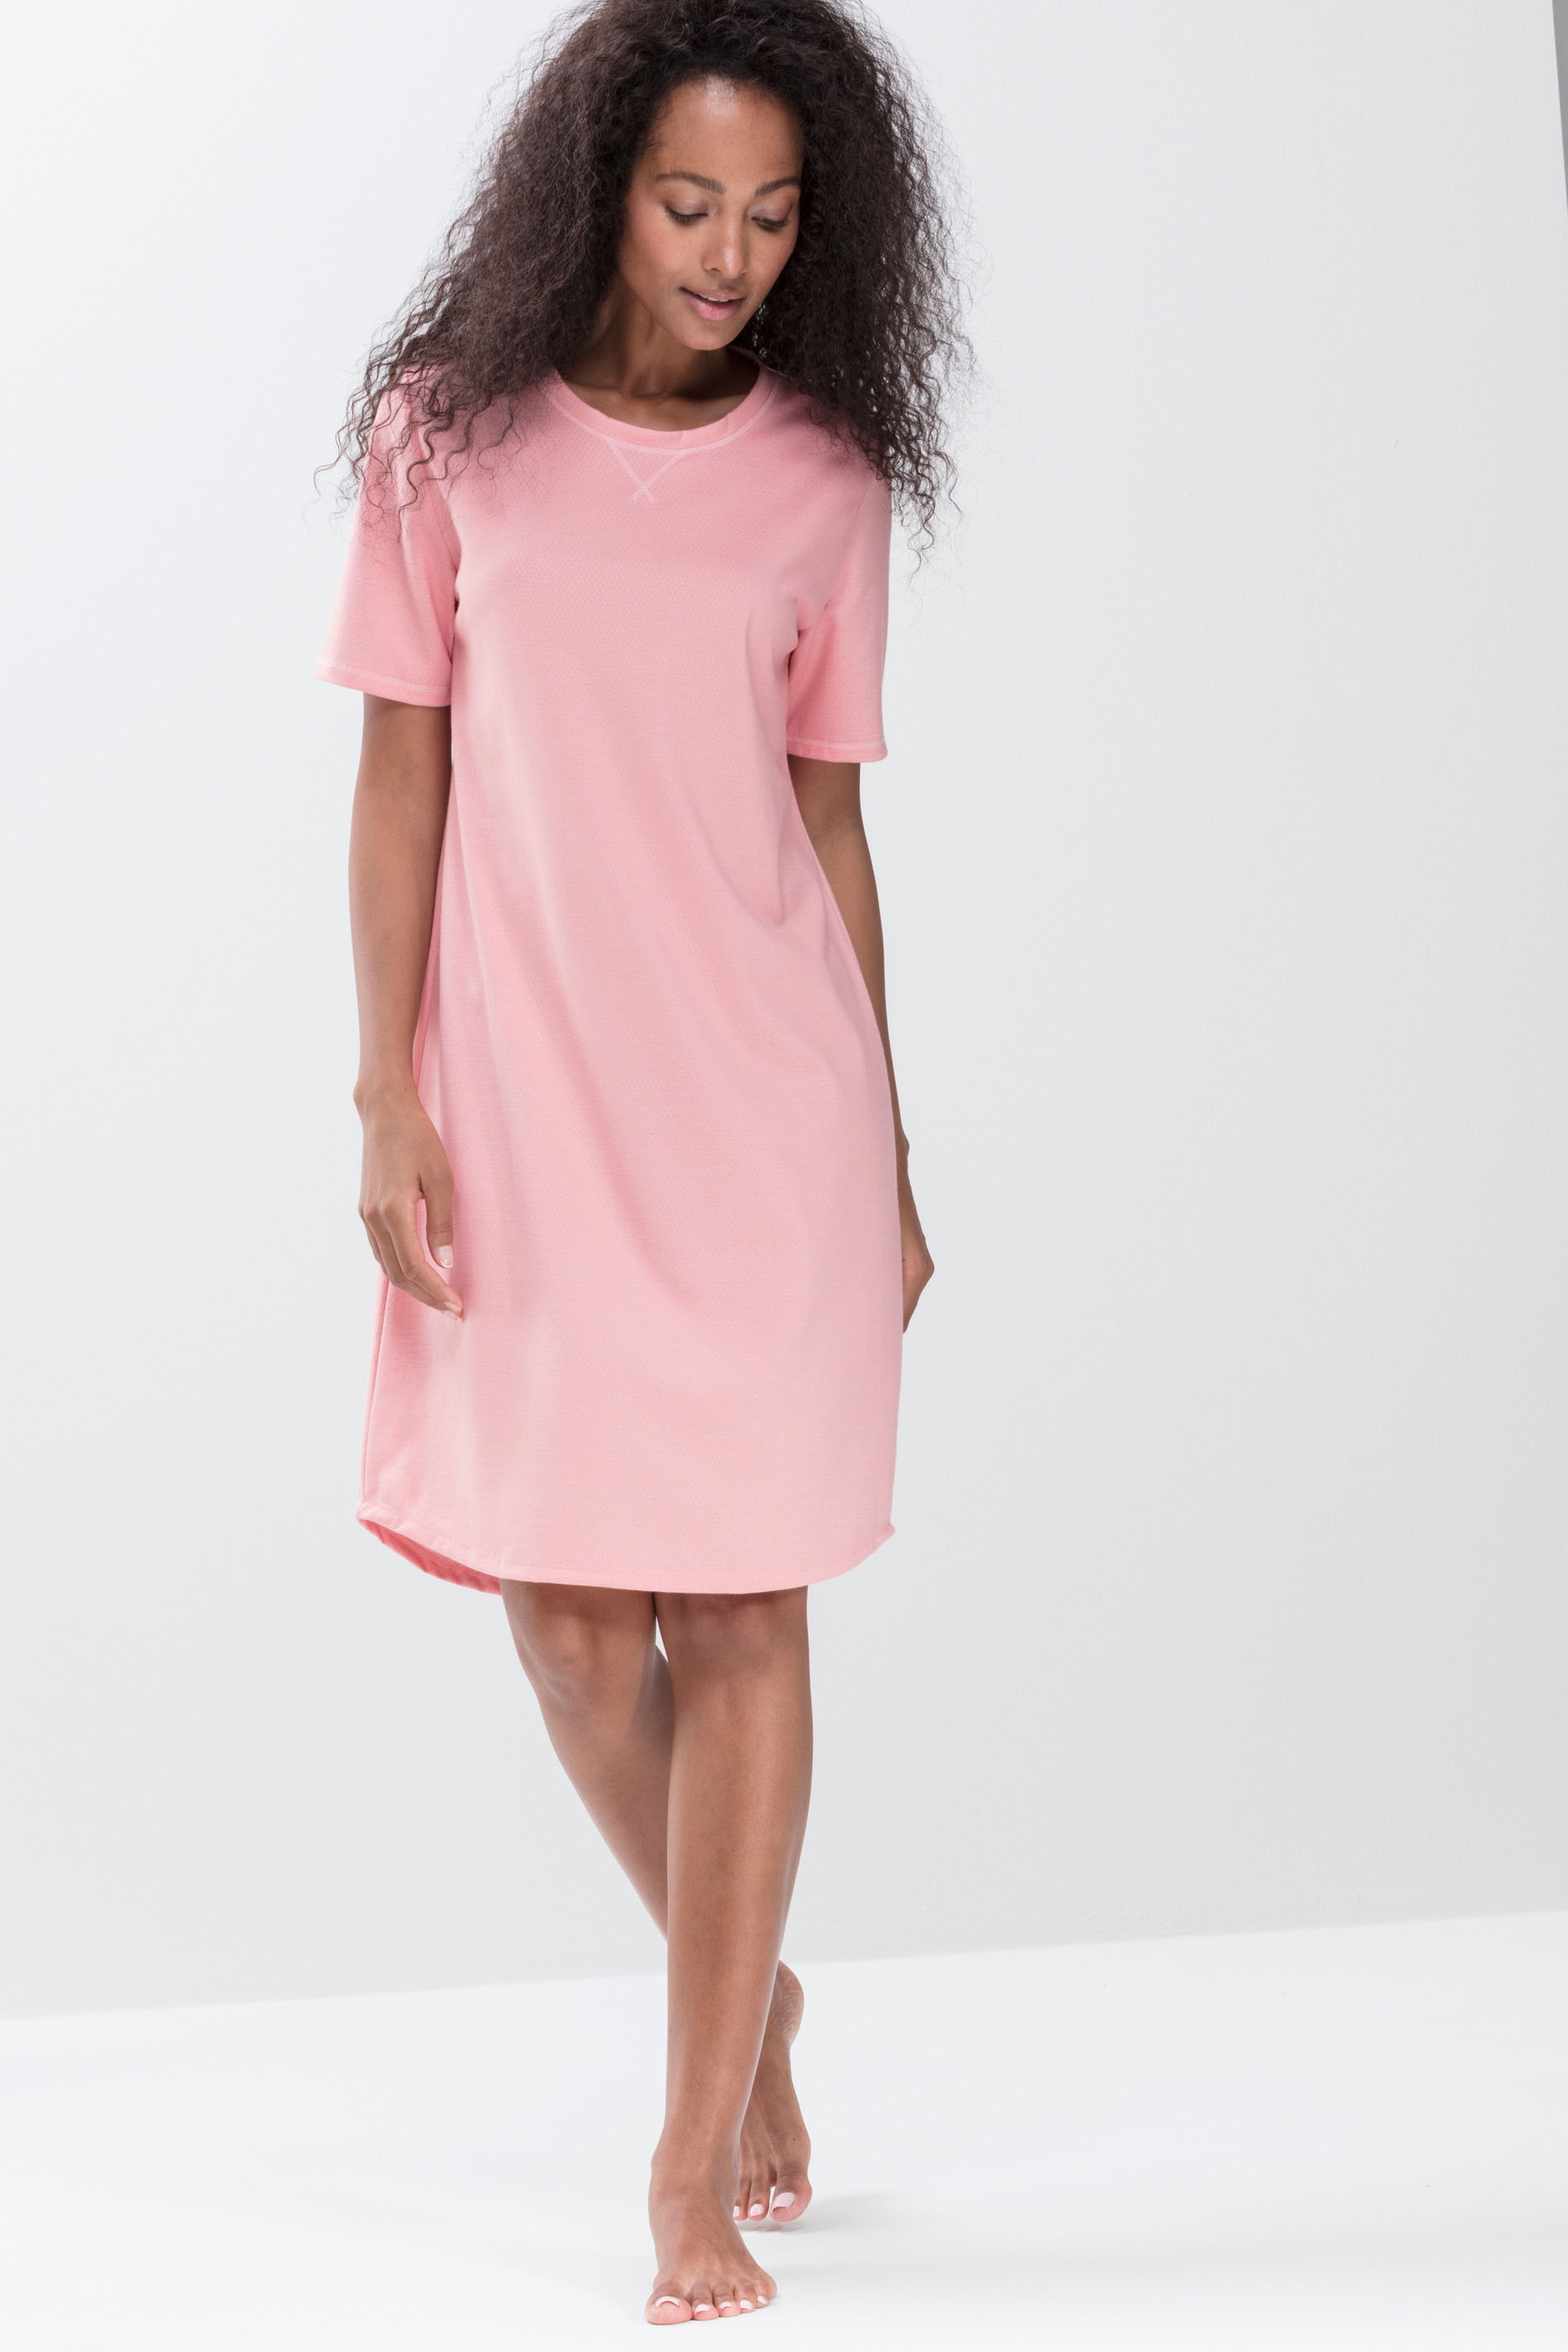 Nachthemd Serie Zzzleepwear Farbe rosa | mey®